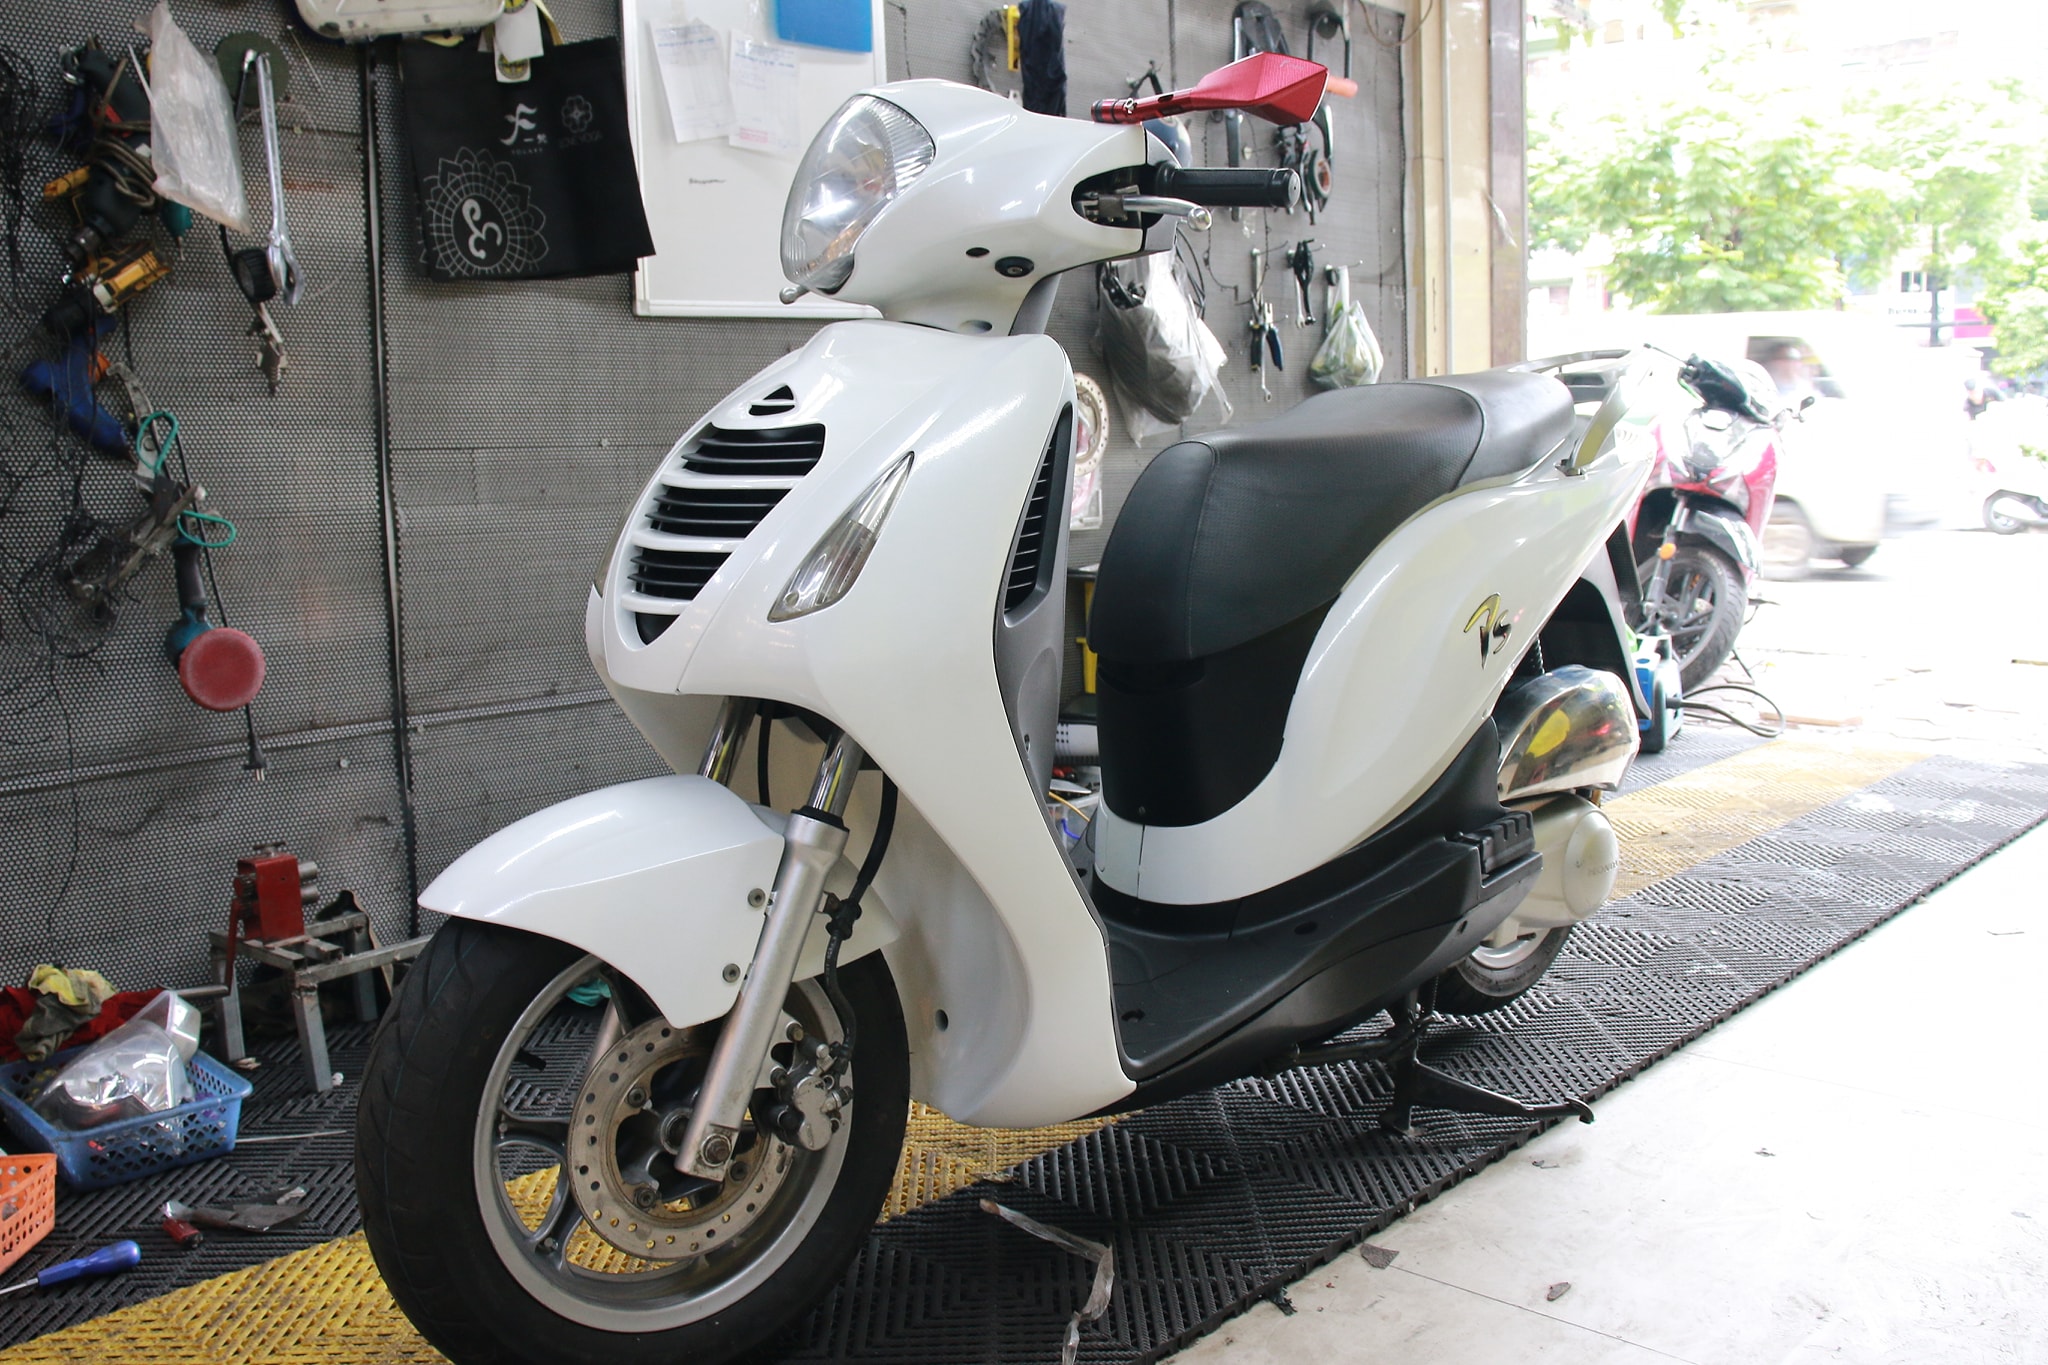 Bán Honda PS 150i trắng 2014 chính chủ tên mình ở Hà Nội giá 35tr MSP  1182874